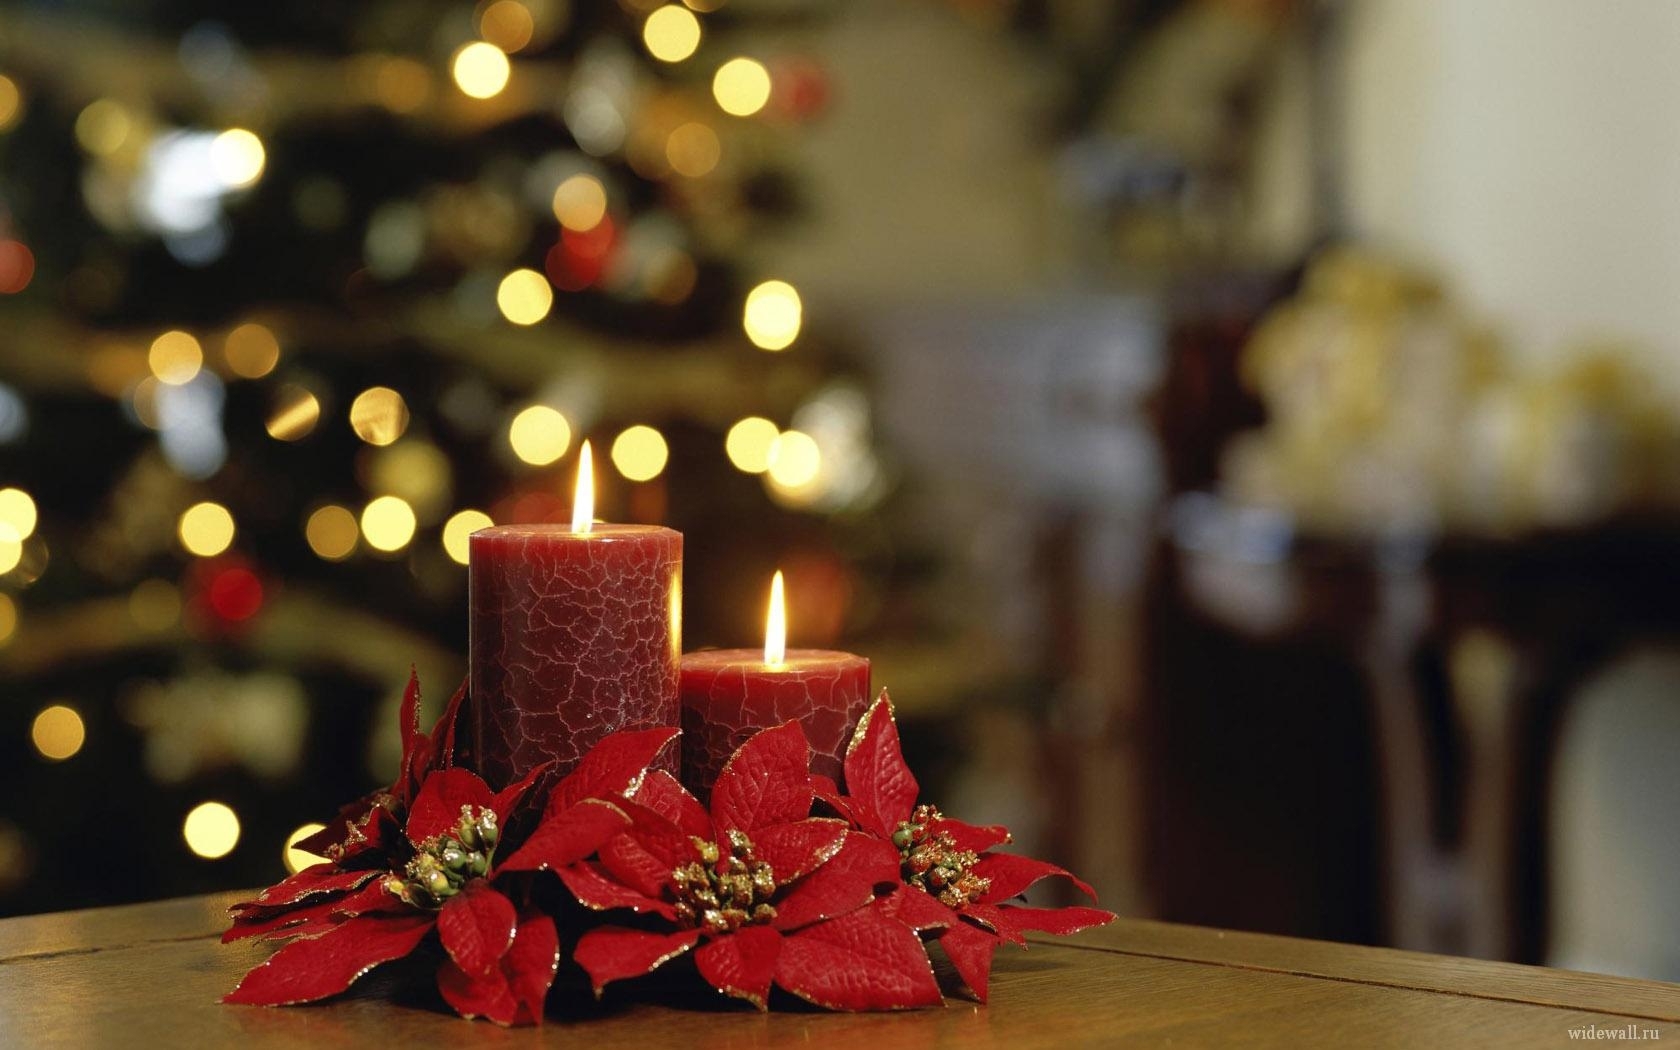 Скачать обои бесплатно Свечи, Праздники, Рождество (Christmas Xmas), Новый Год (New Year) картинка на рабочий стол ПК